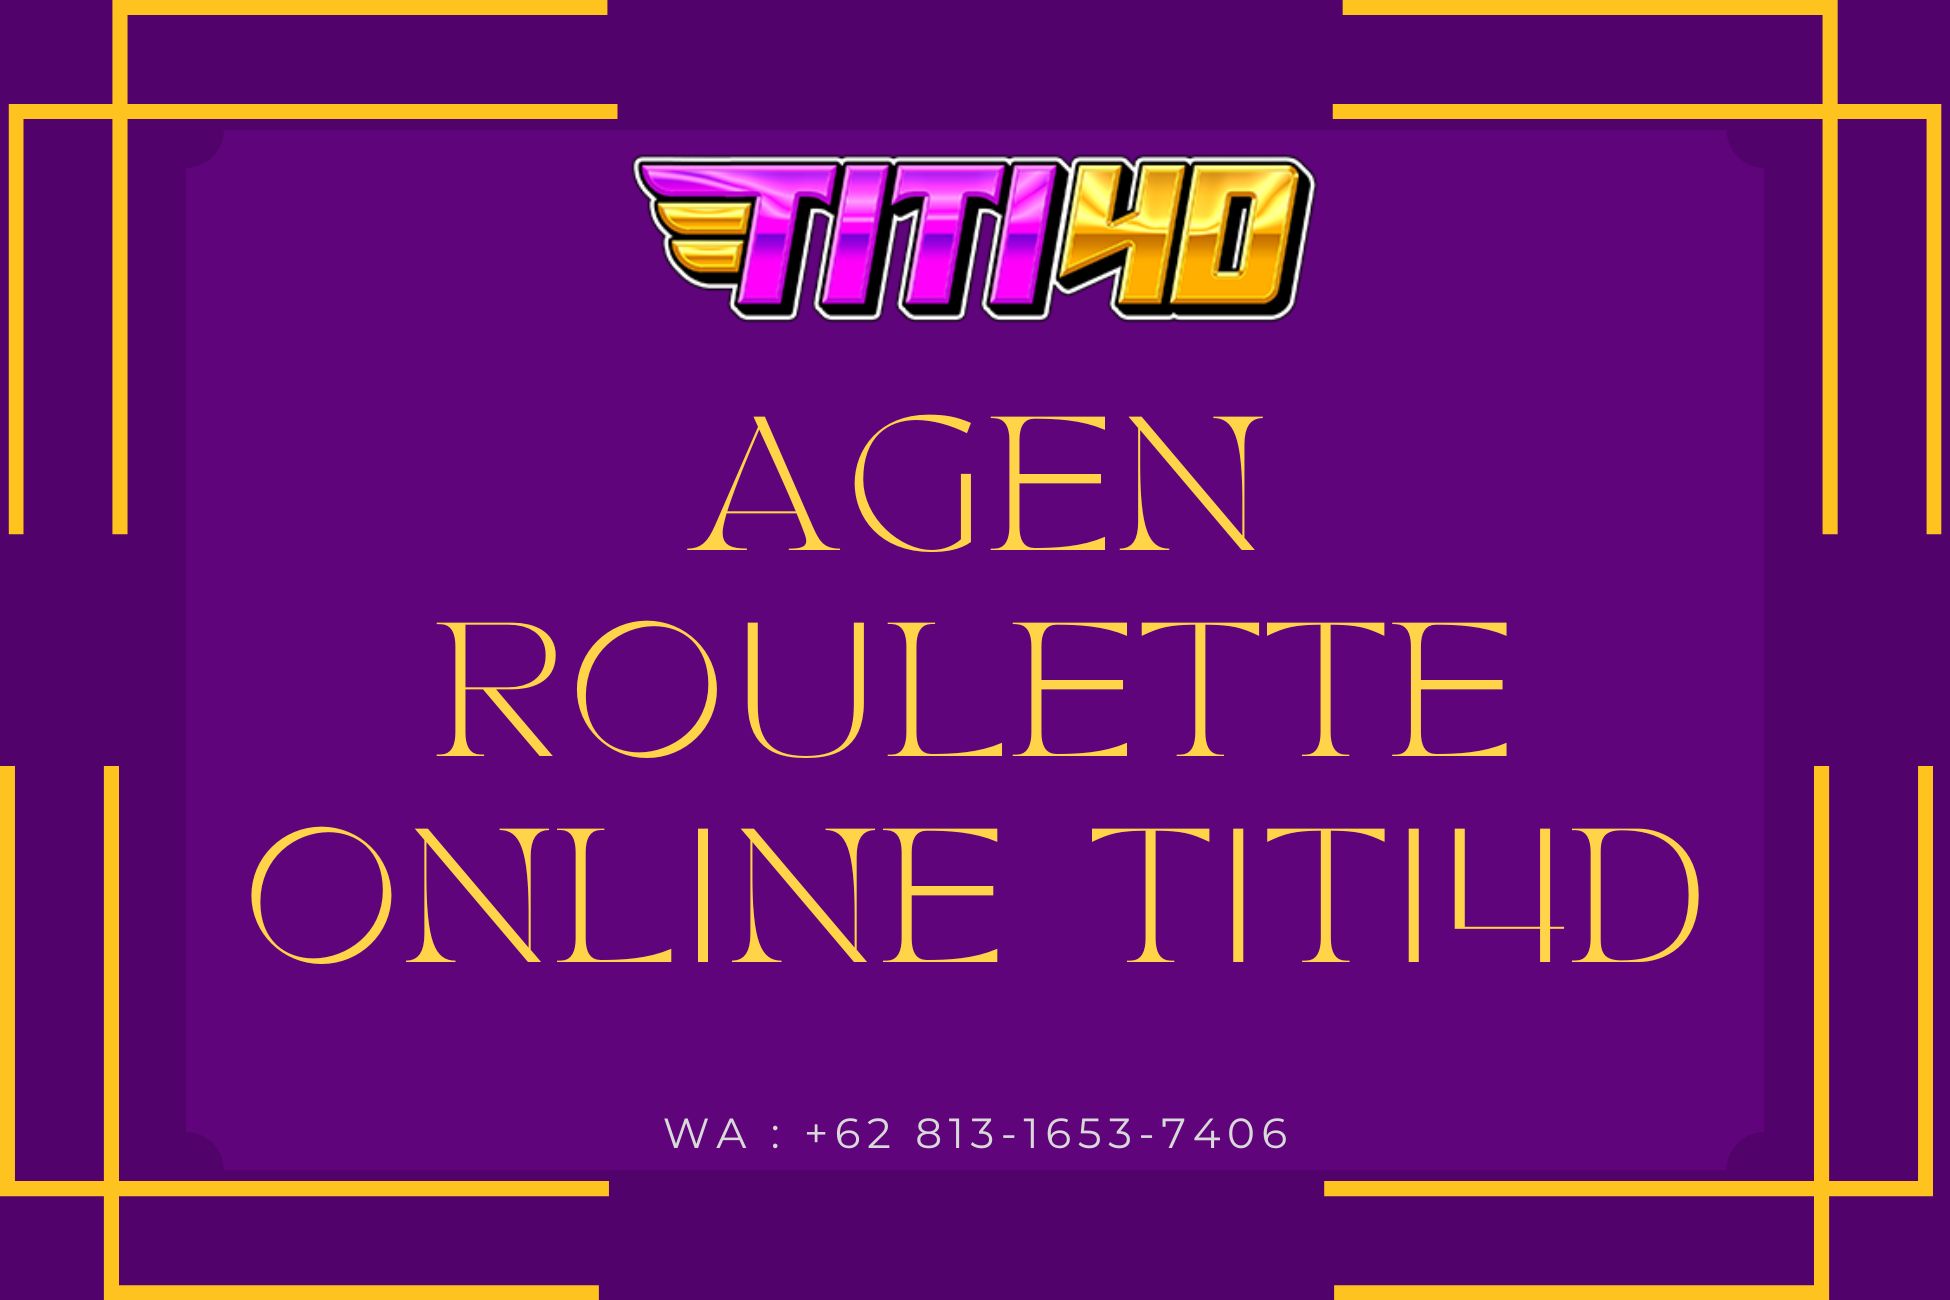 Agen Roulette Online Titi4D